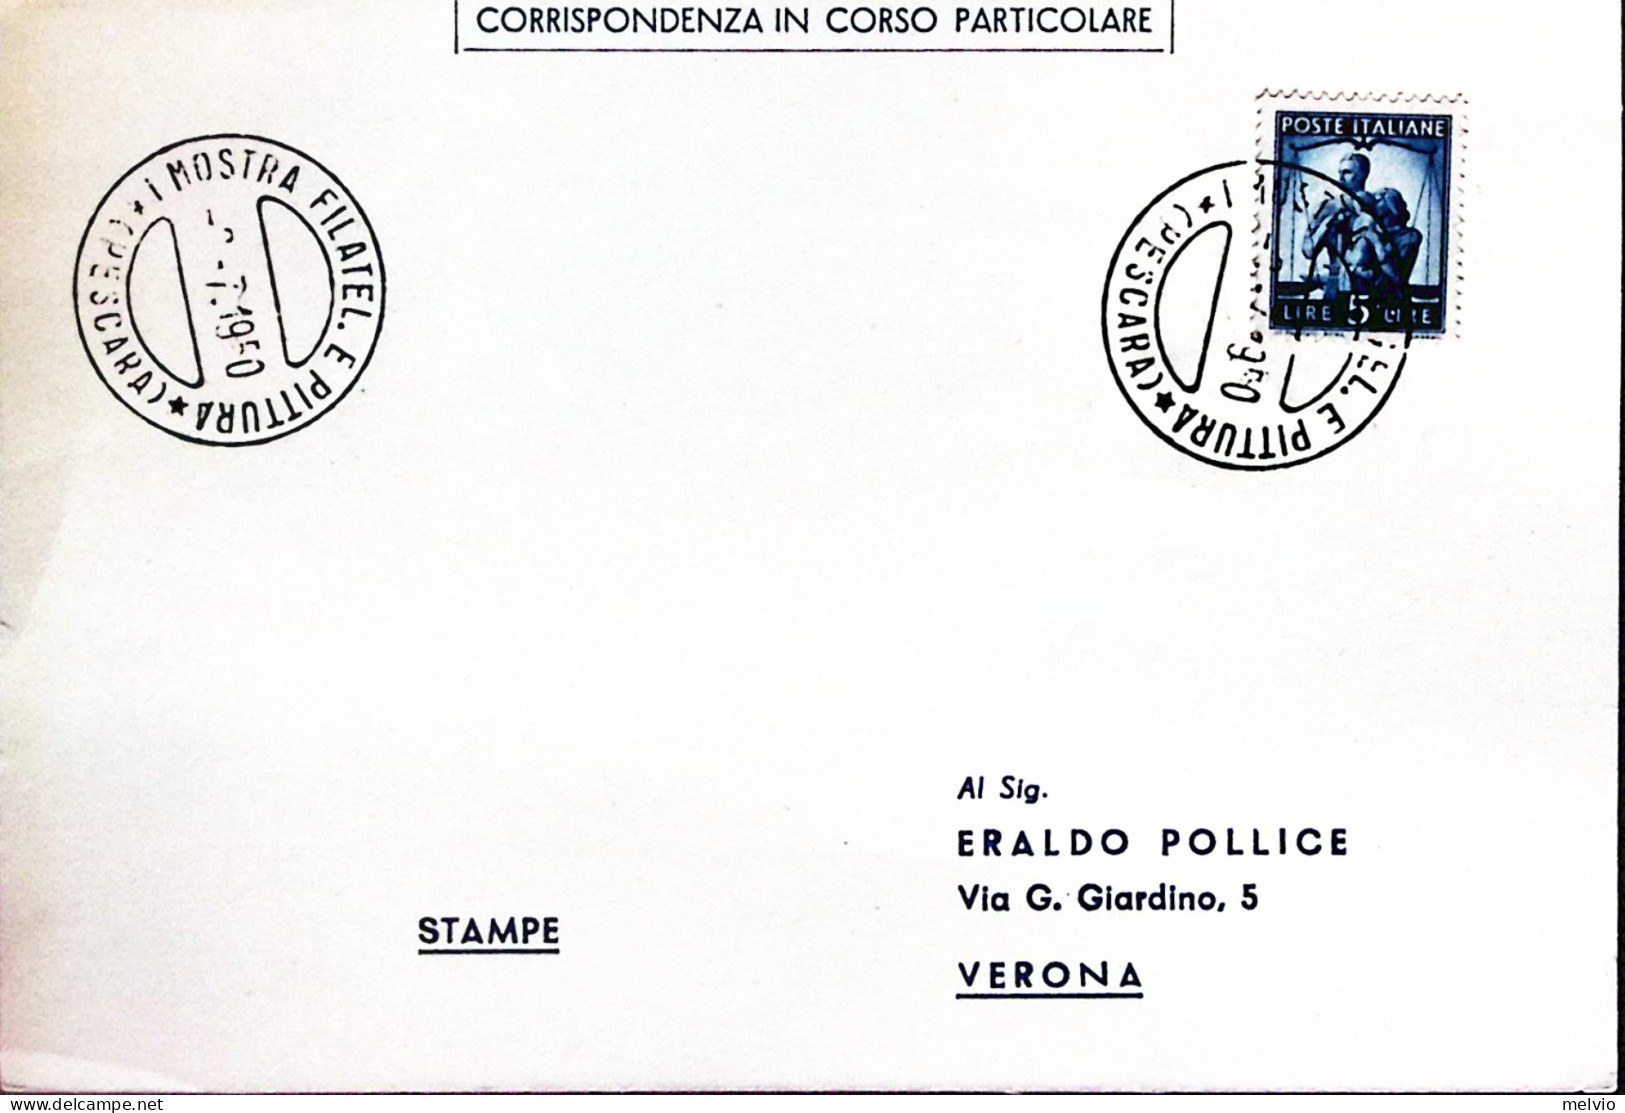 1950-PESCARA 1 Mostra Filatelica E Pittura (2.7) Annullo Speciale Su Cartolina - Esposizioni